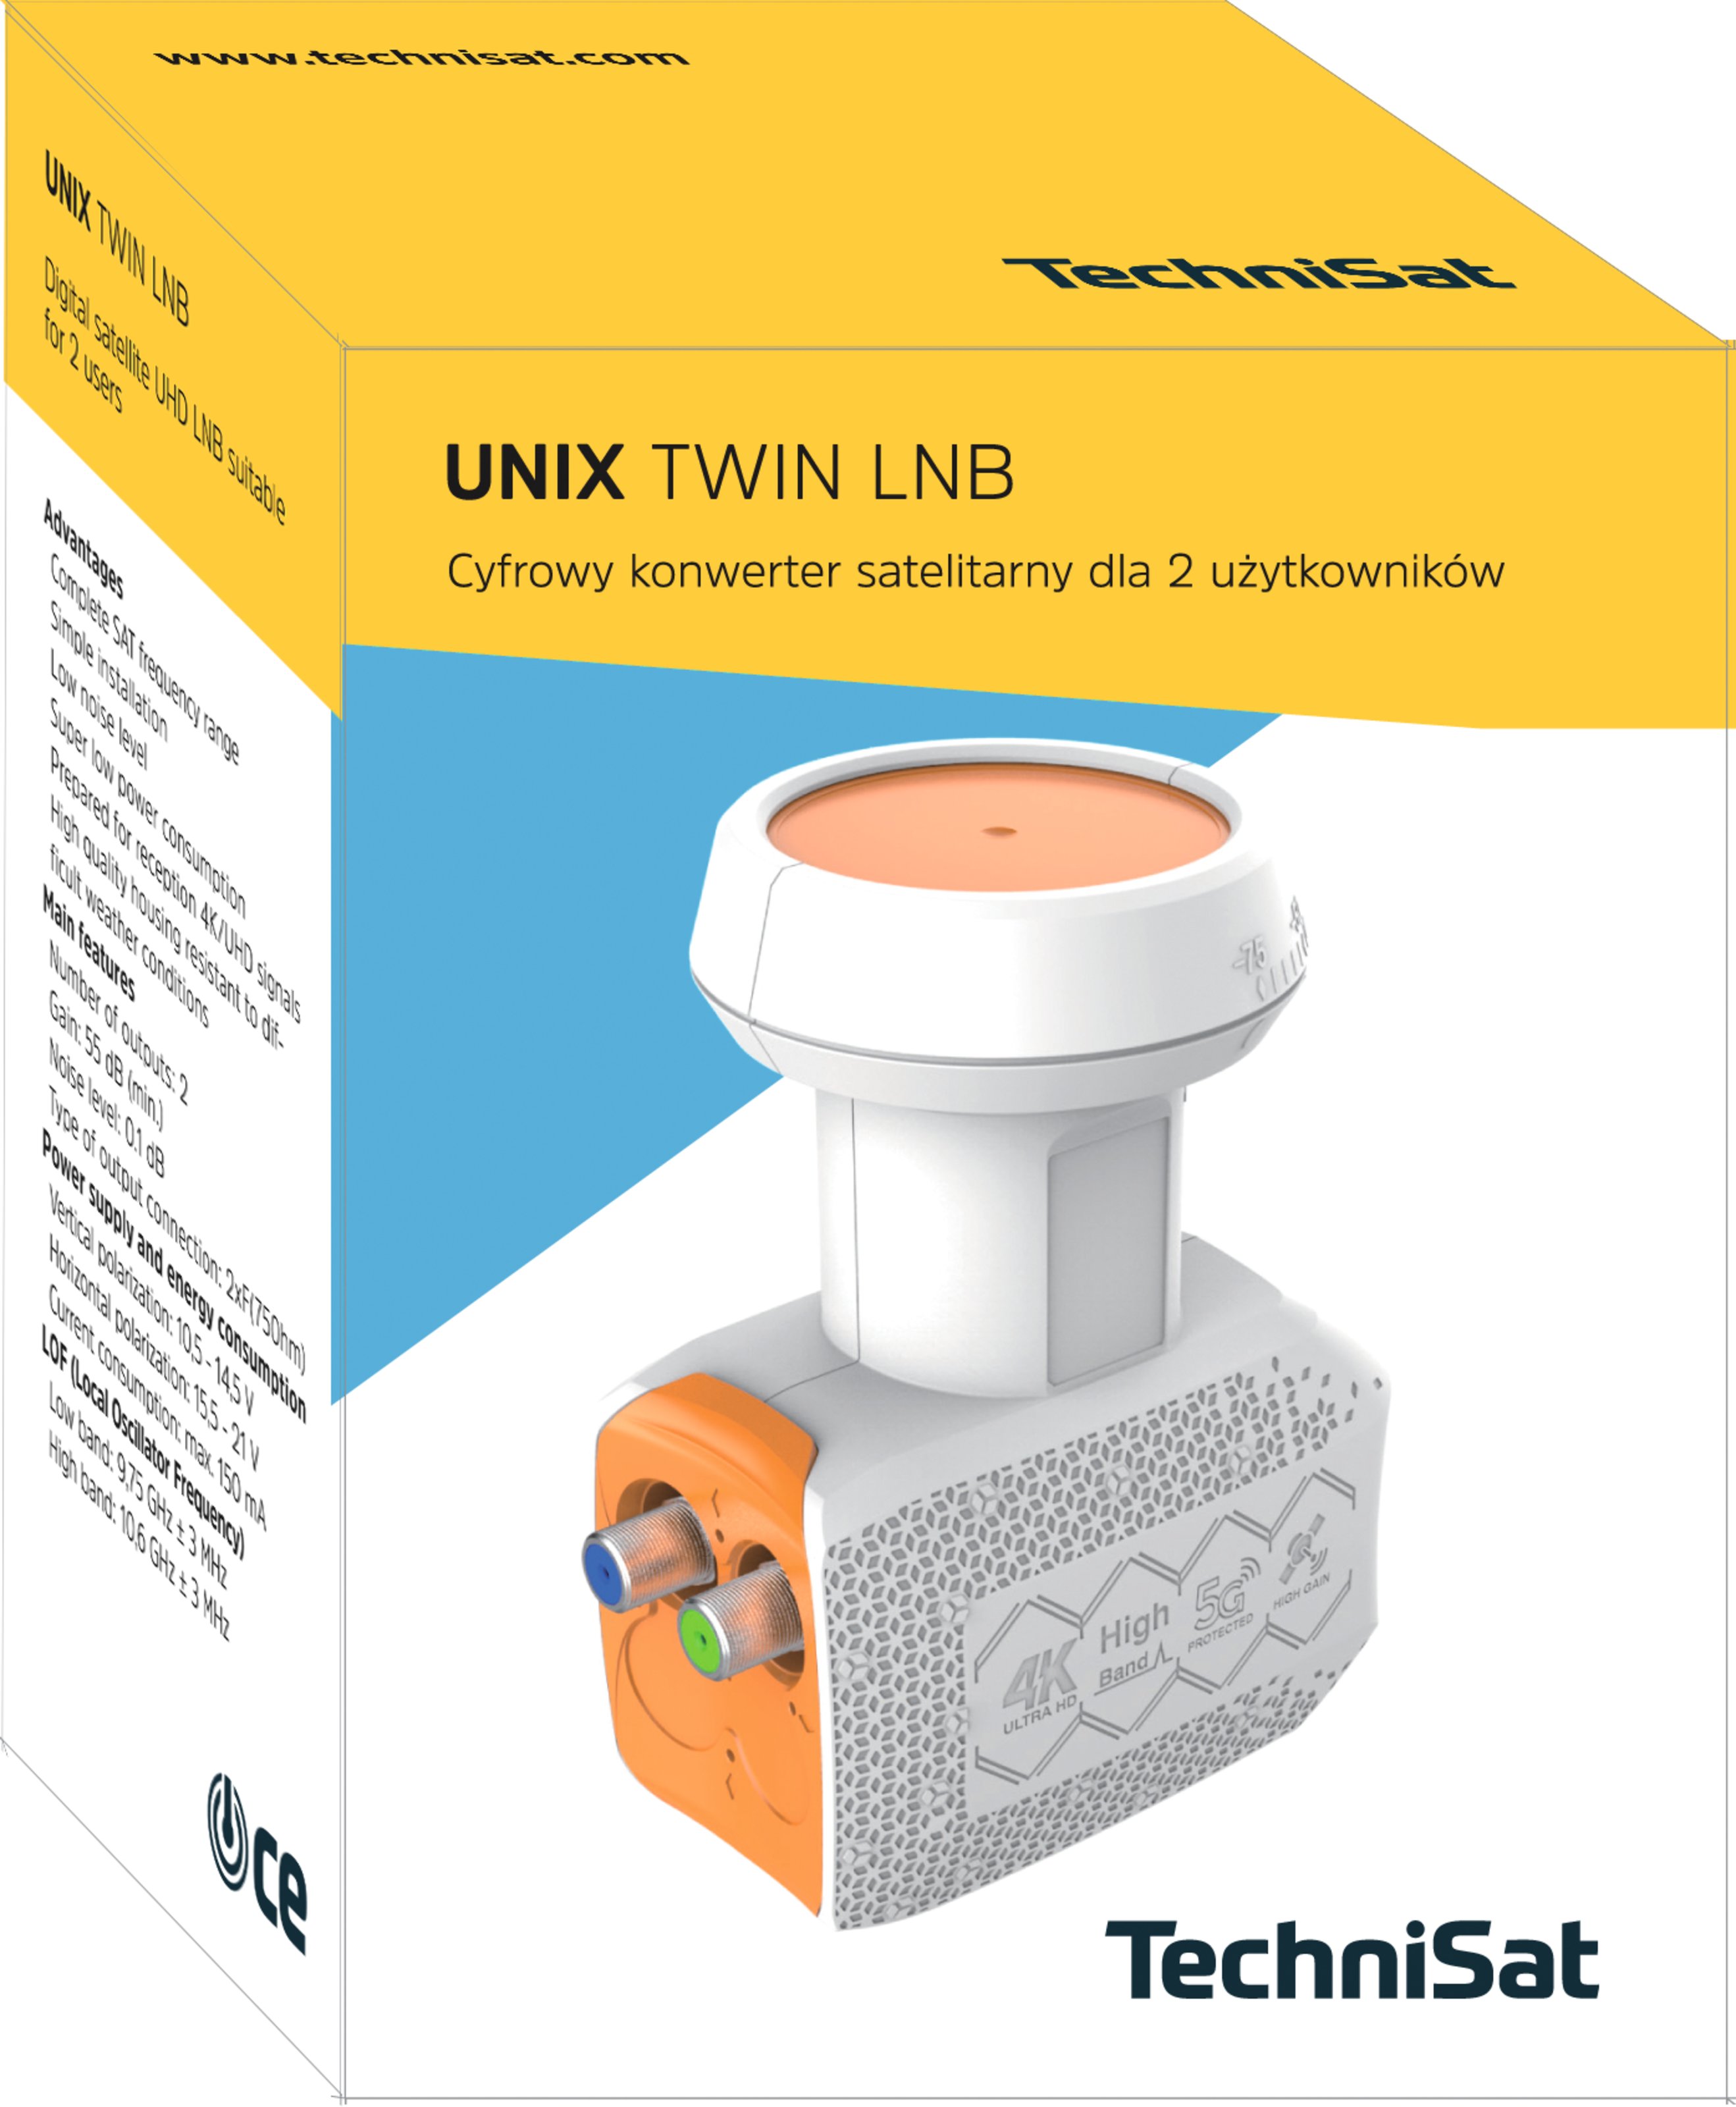 UNIX Twin-LNB